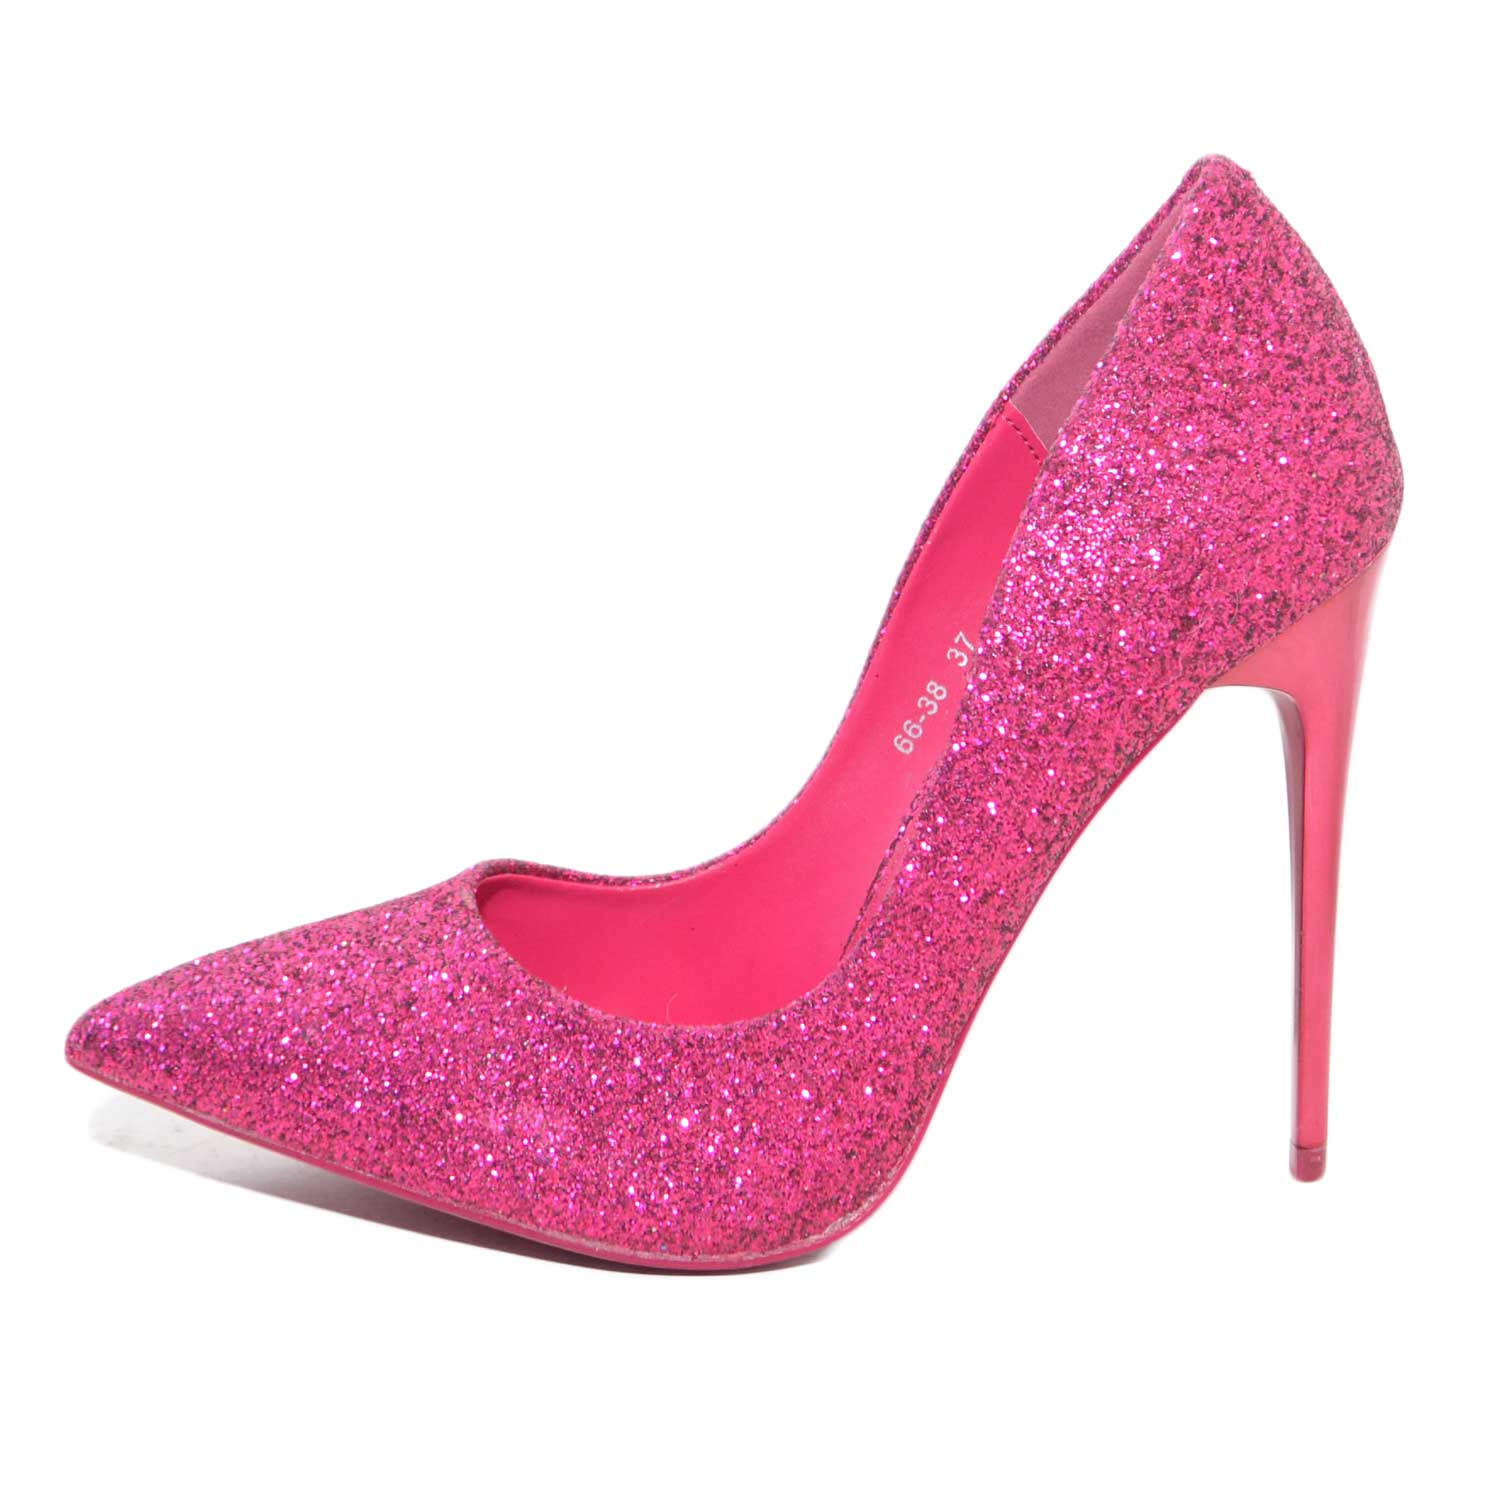 scarpe donna decollete glitter fucsia con tacco laccato tono su tono  elegante donna d�collet� Malu Shoes | MaluShoes